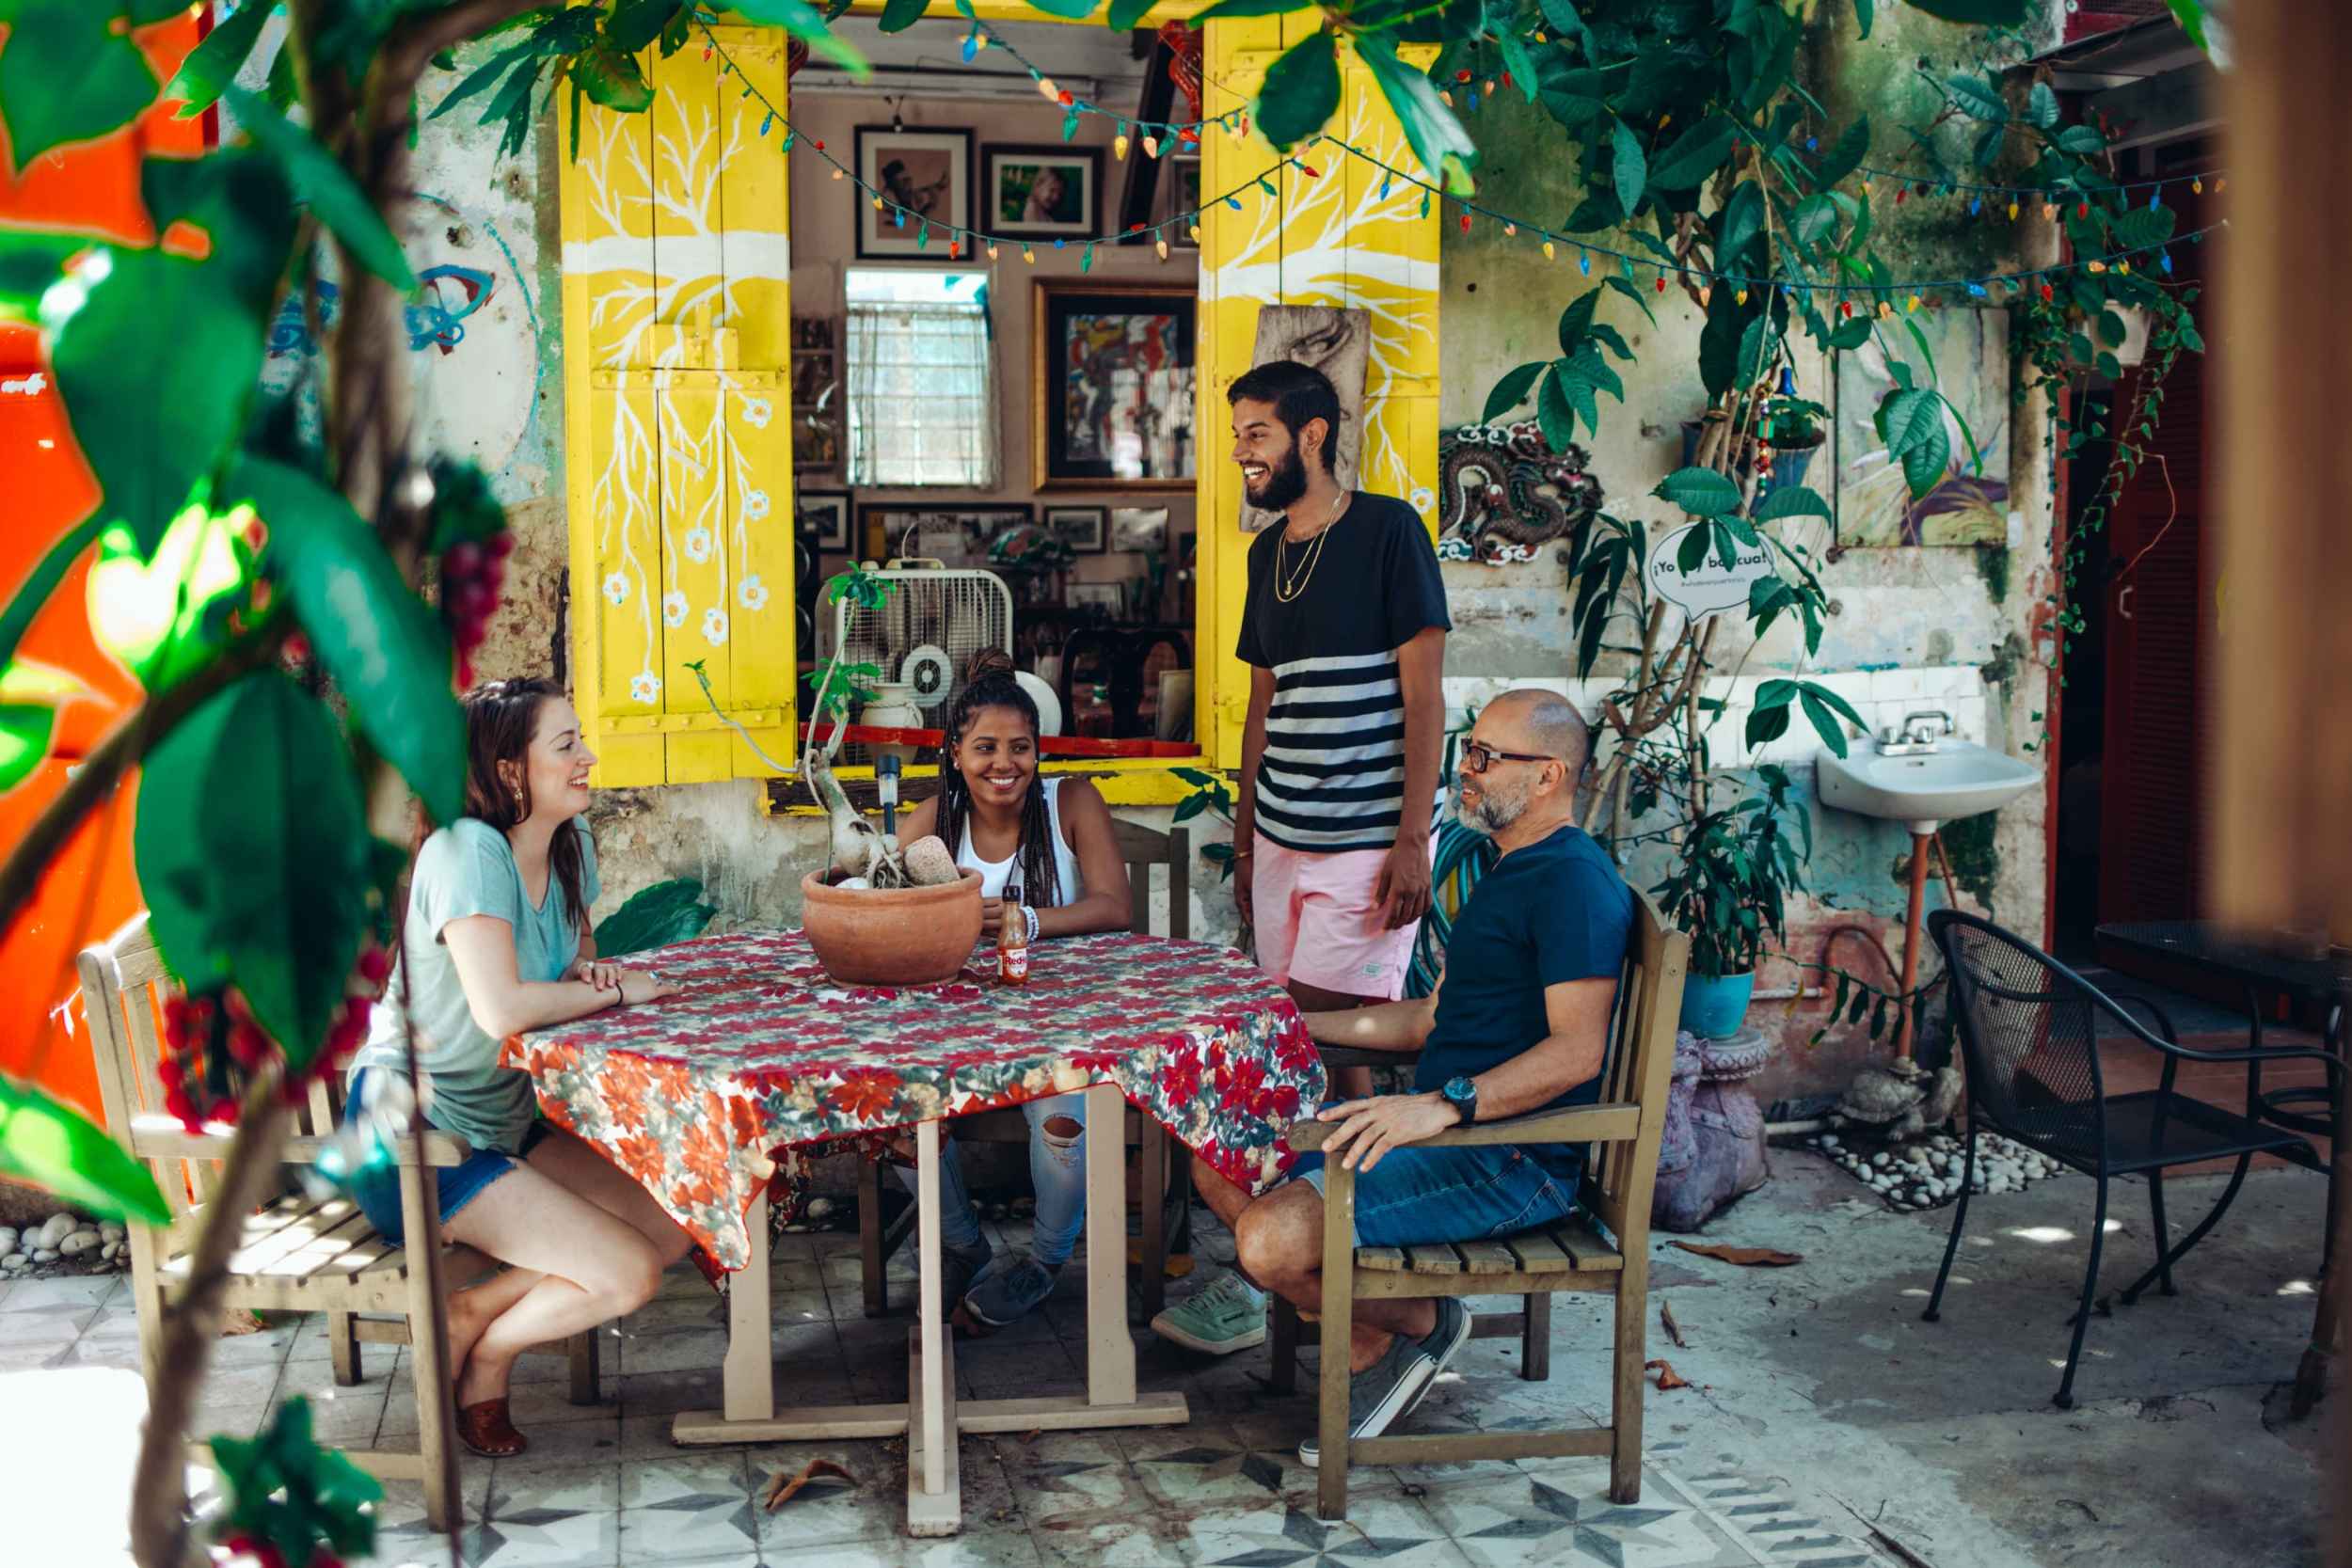 El gobernador Rosselló y Brian Chesky, CEO de Airbnb, anuncian iniciativa para atraer turismo Puerto Rico